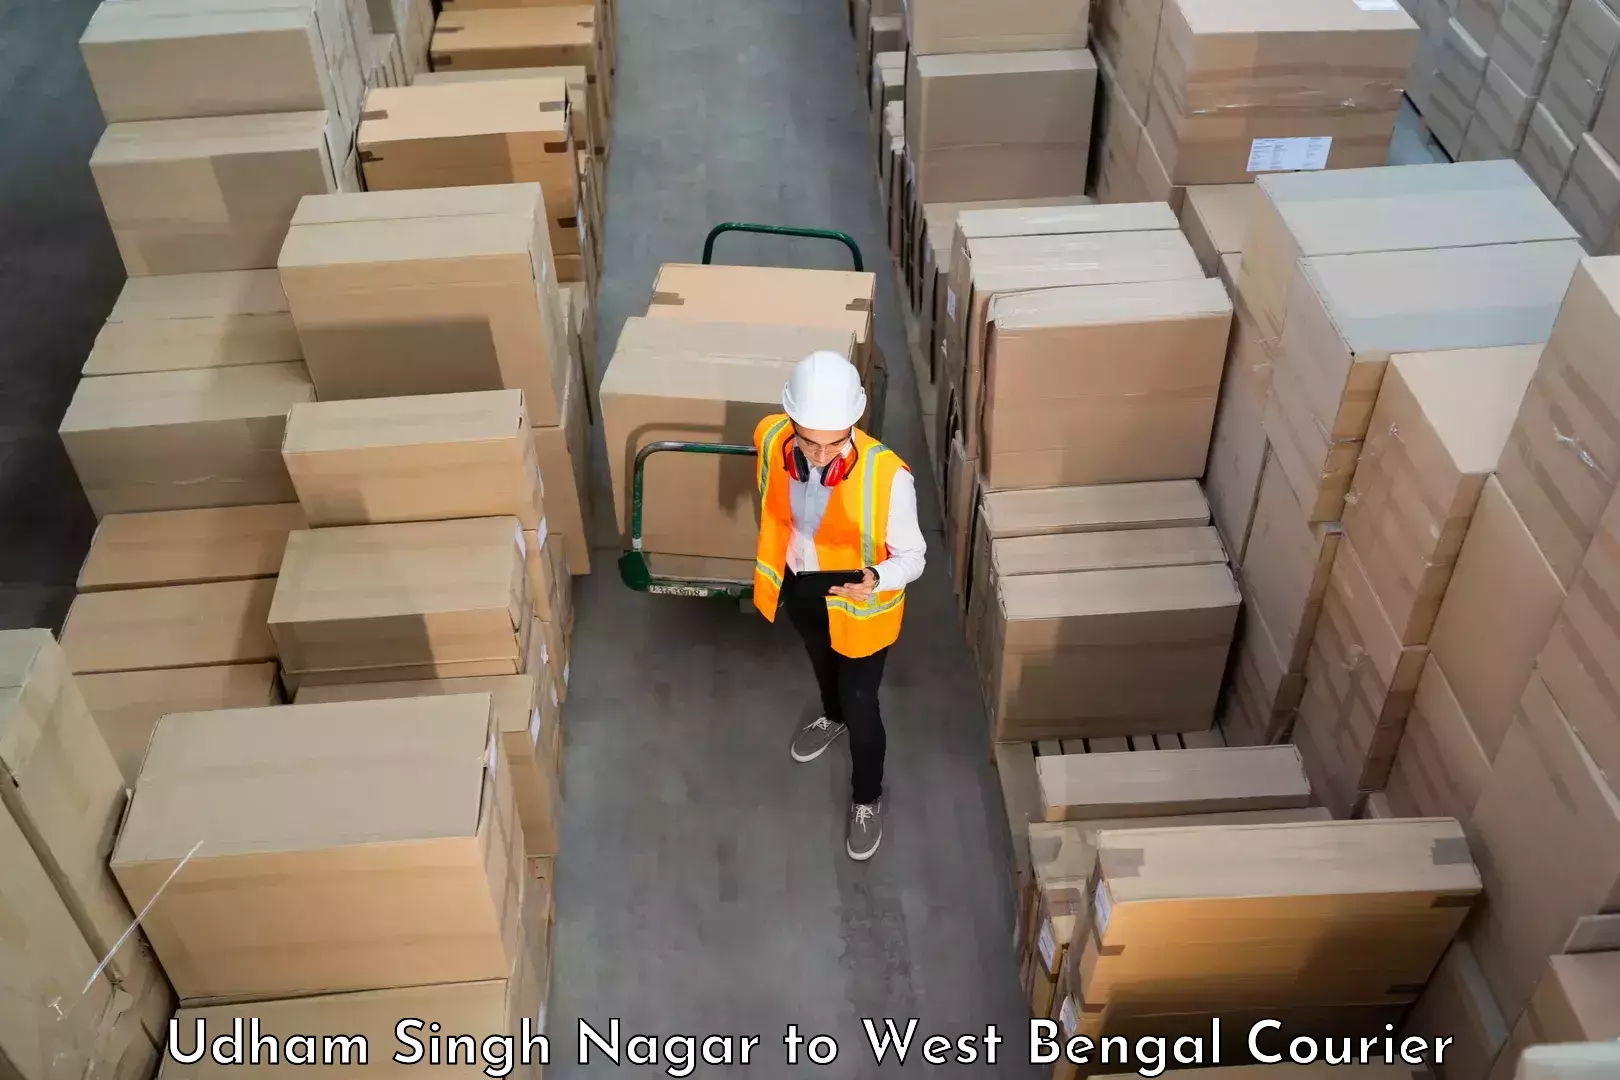 Professional moving company Udham Singh Nagar to Lodhan